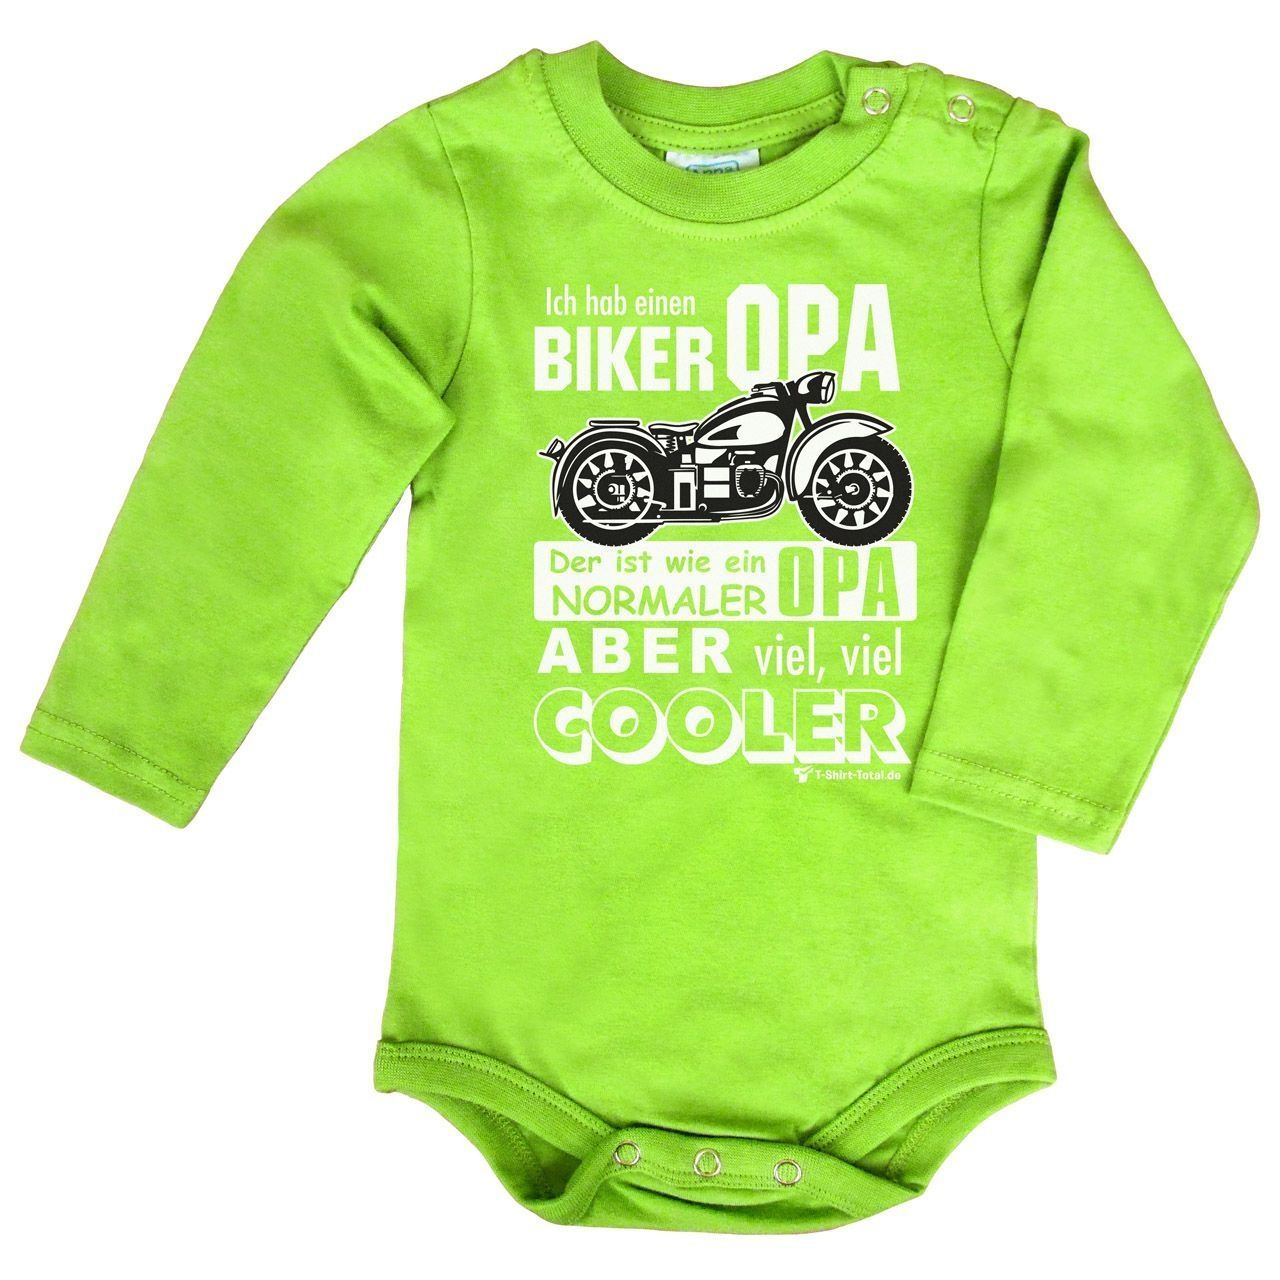 Biker Opa Baby Body Langarm hellgrün 56 / 62